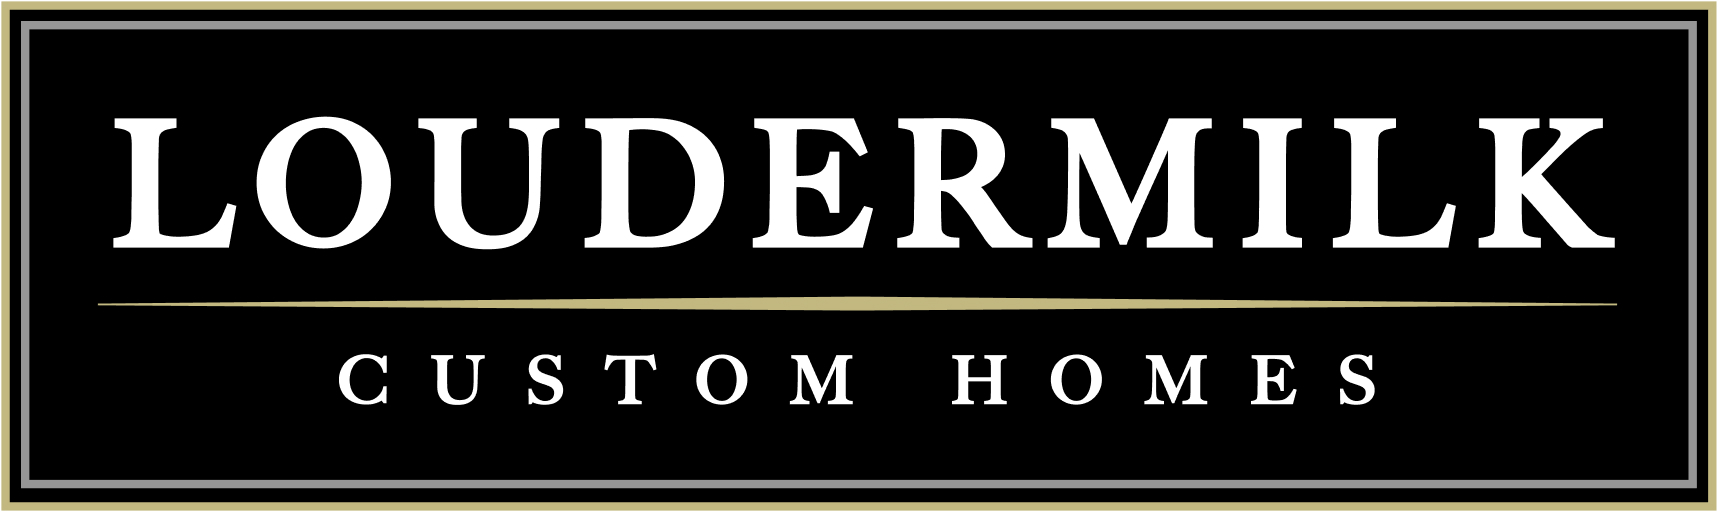 Loudermilk Homes Logo Dark Background